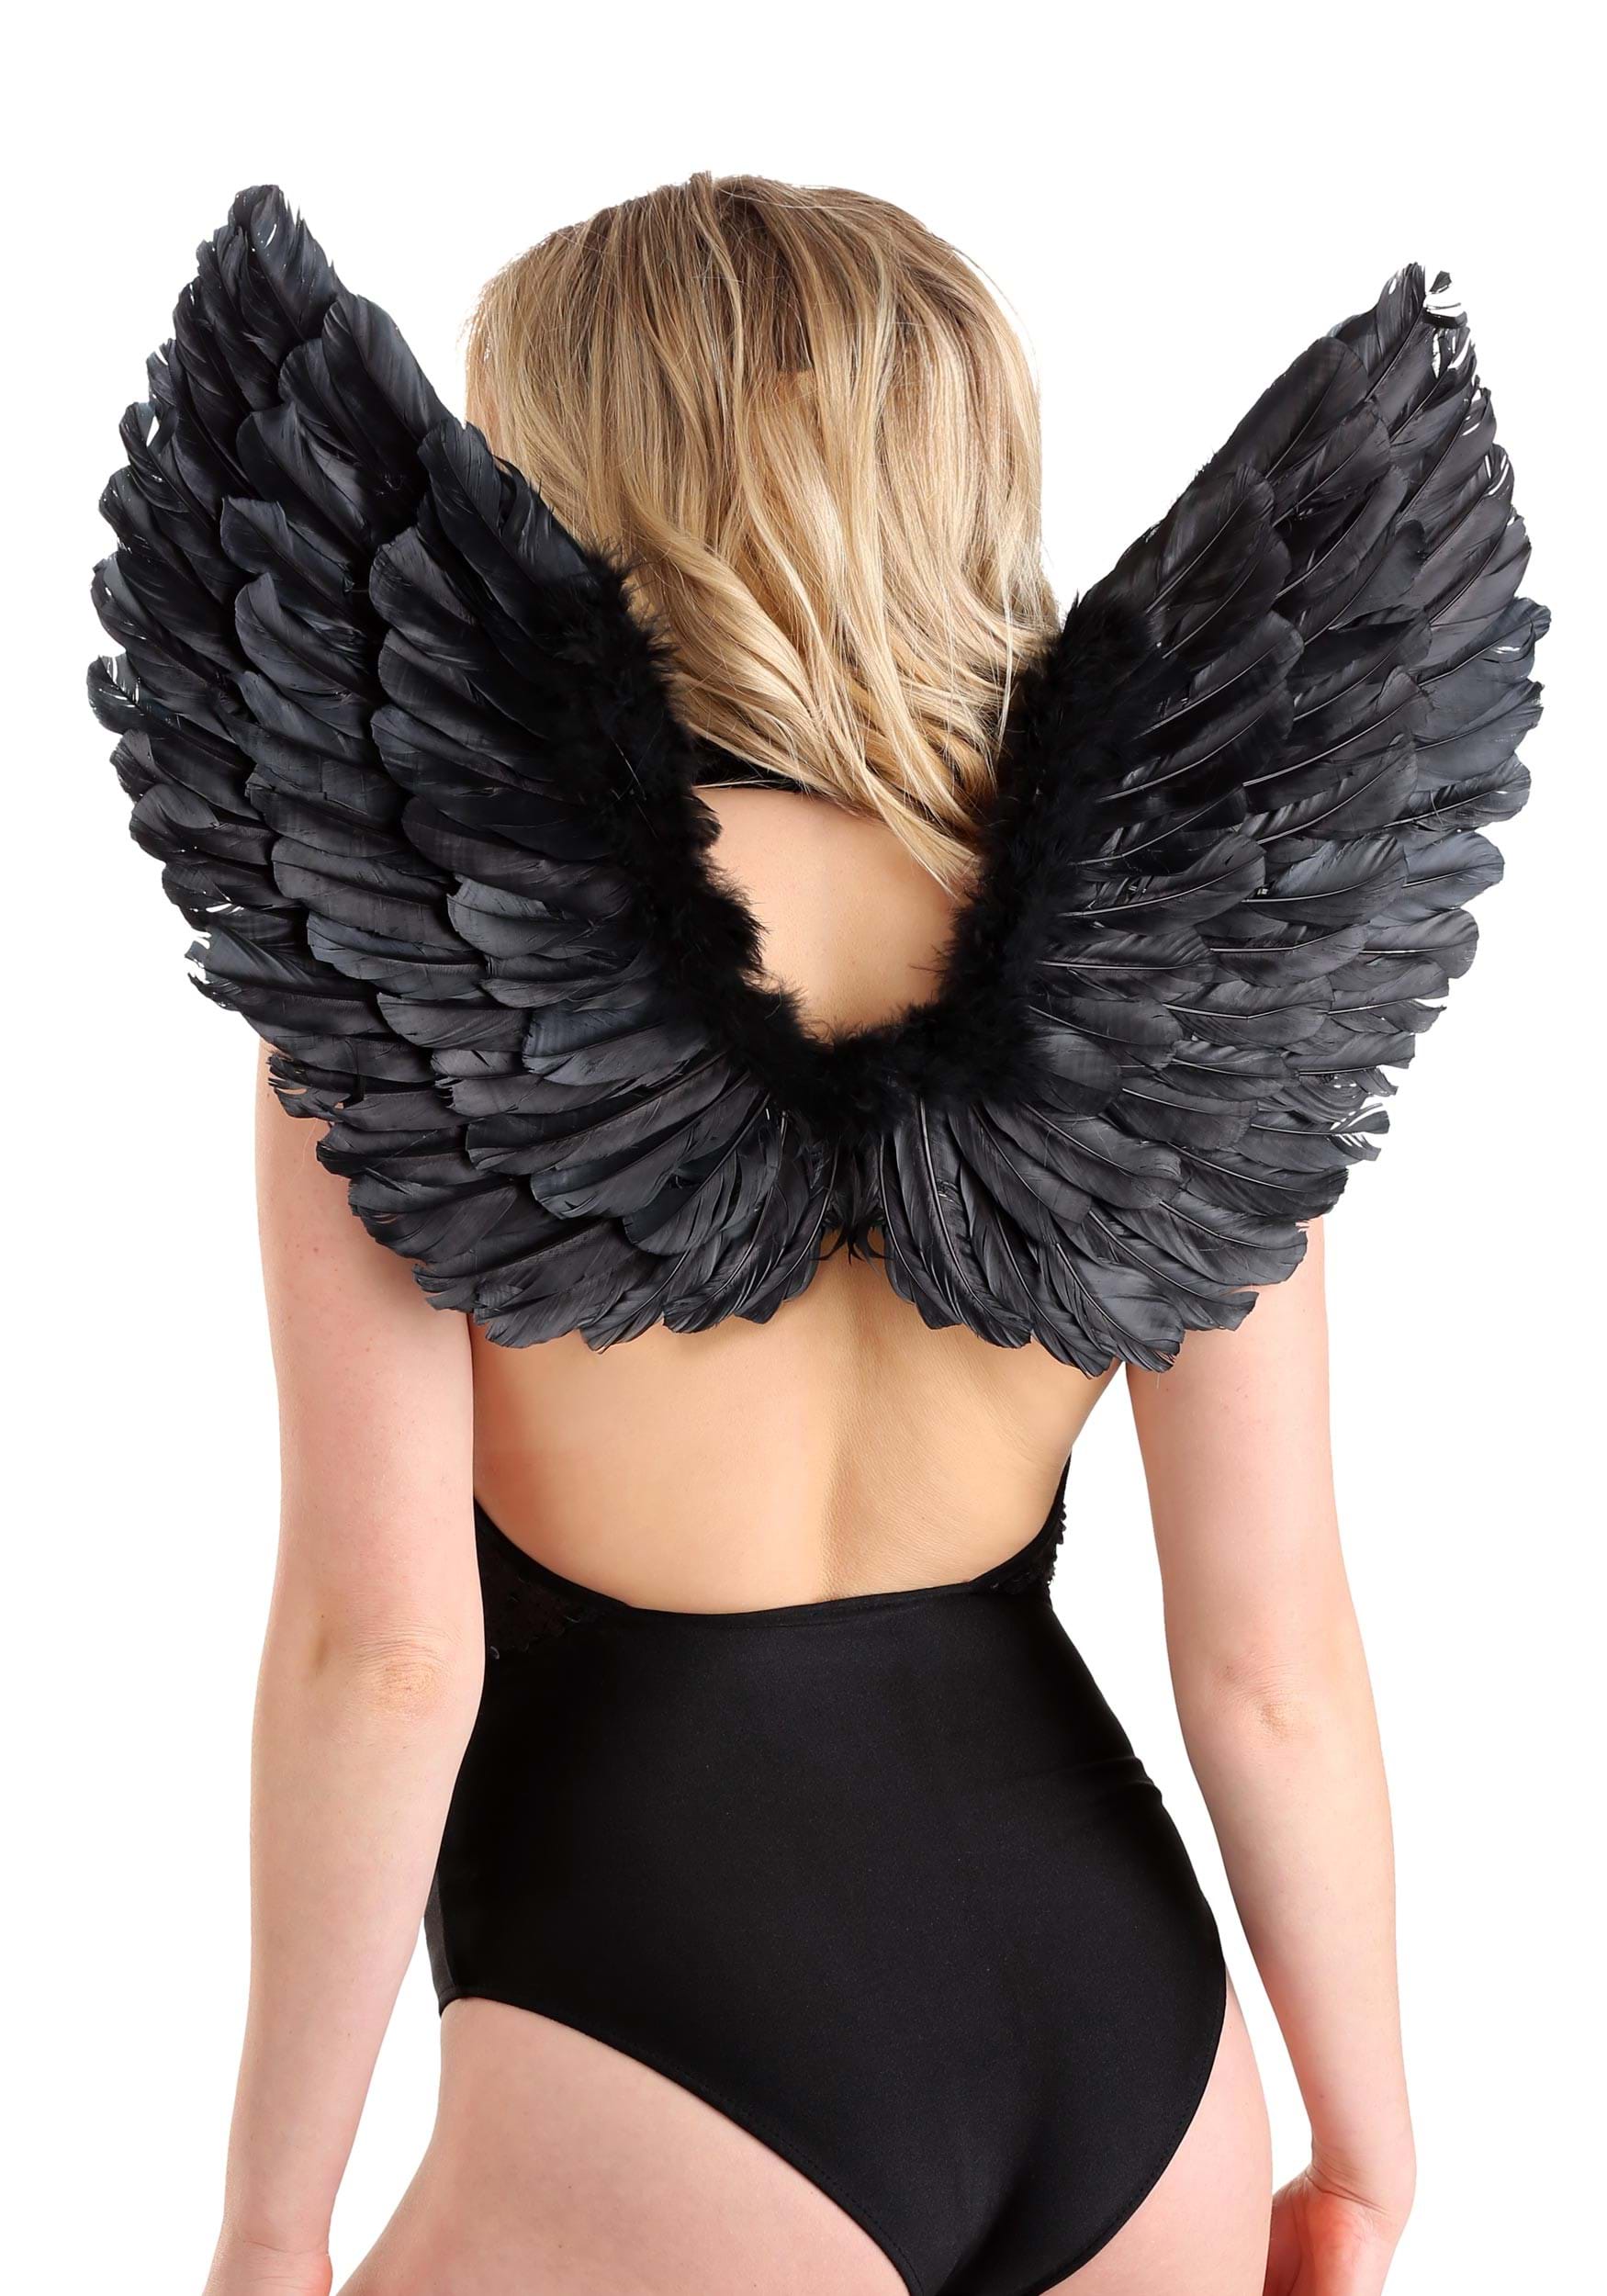 Black Angel Wings Fancy Dress Costume Set , Fancy Dress Costume Wings